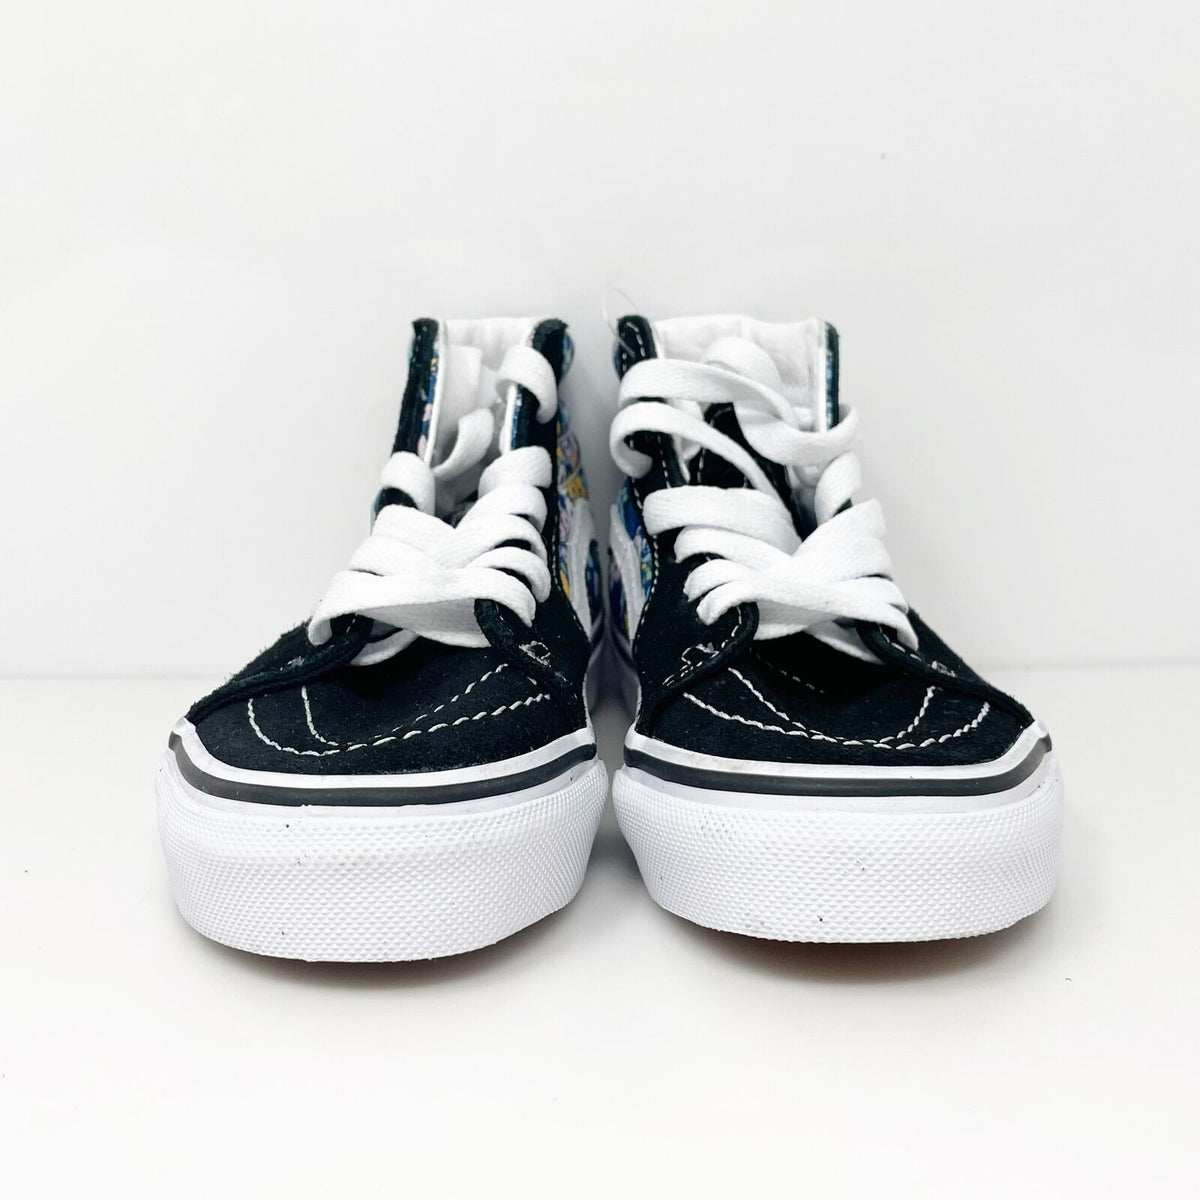 Vans Girls Sk8 Hi 507698 Black Casual Shoes Sneakers Size 11– SneakerCycle